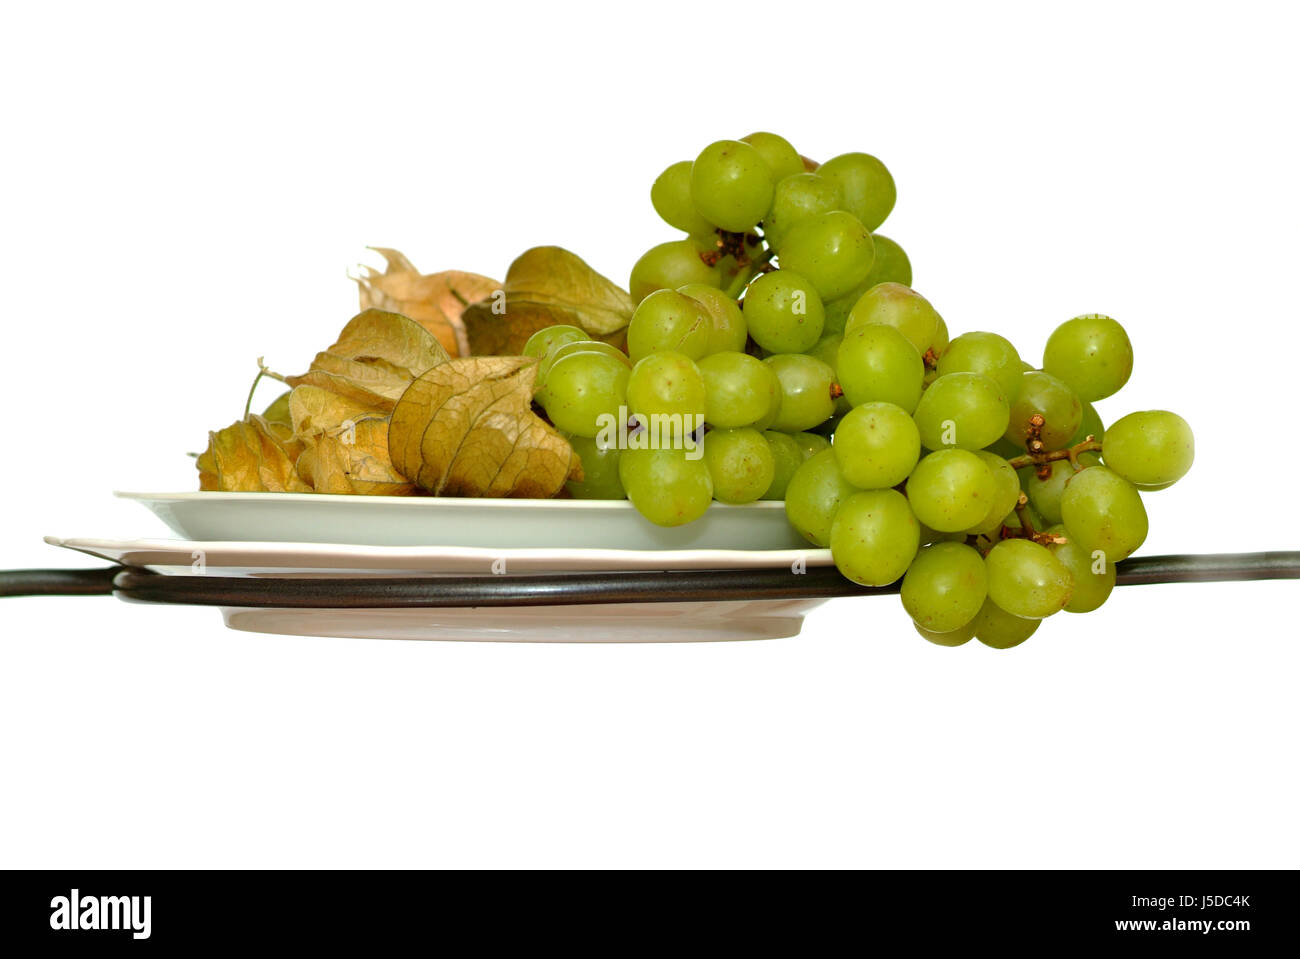 La santé alimentaire aliment vitamin eco usine isolés doucement la faim raisins doux nice Banque D'Images